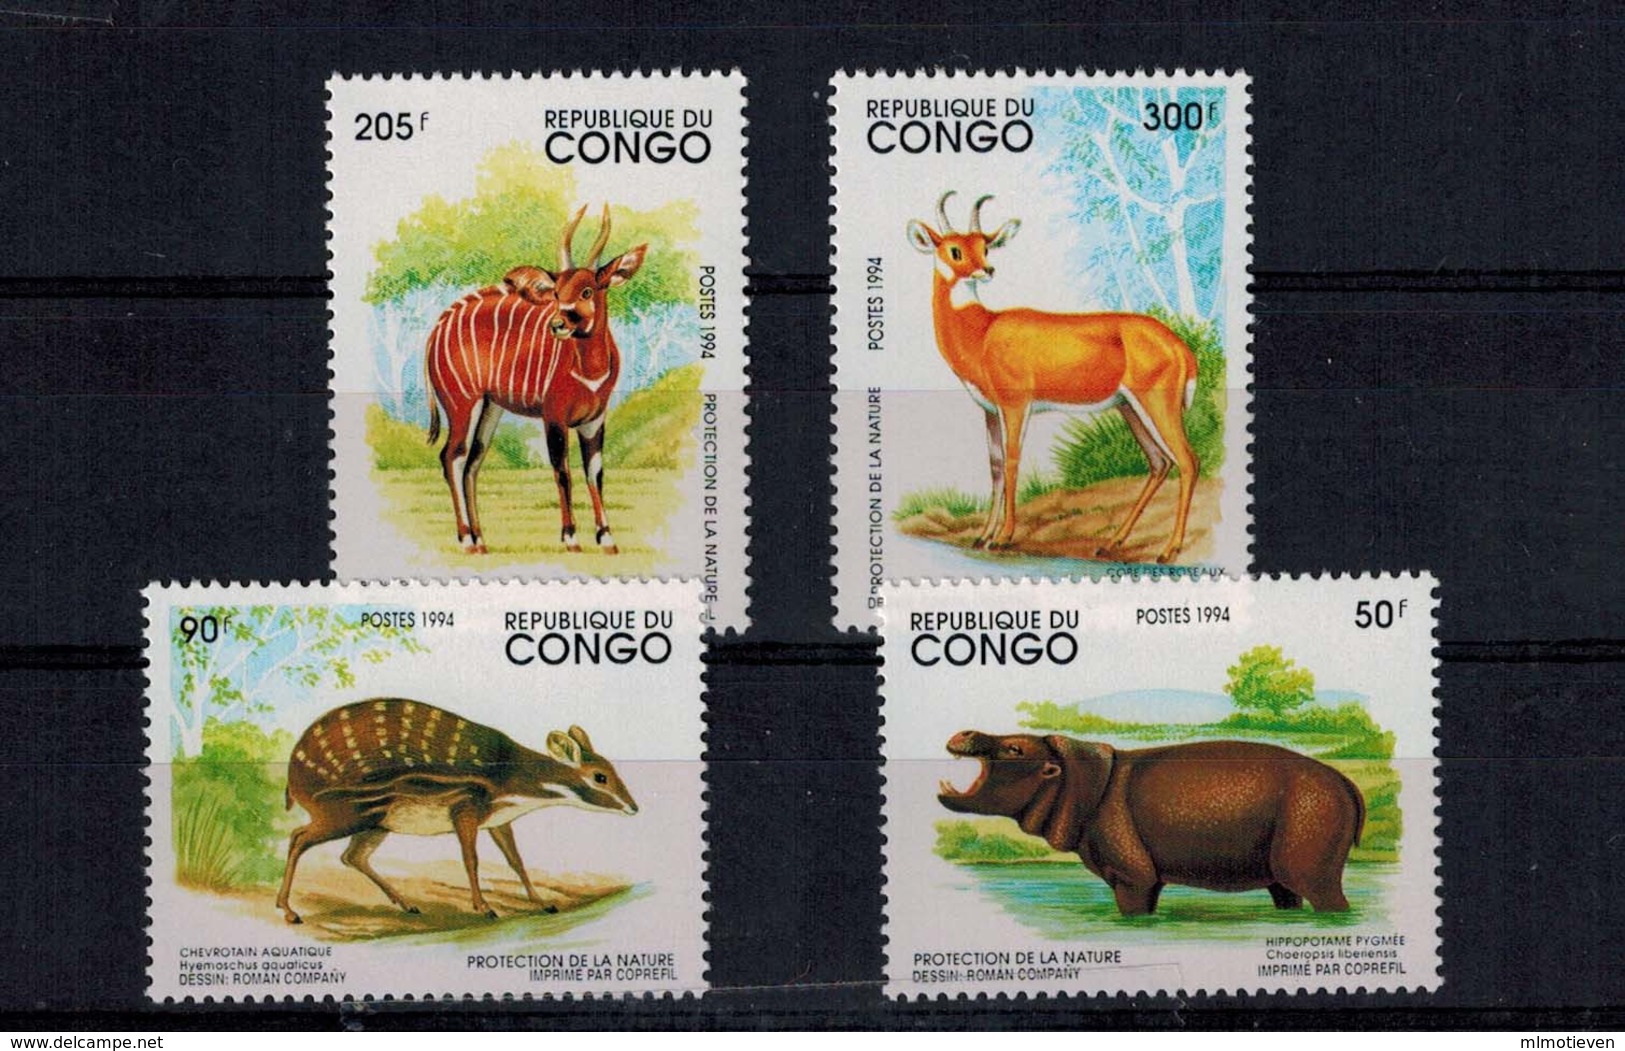 MDA -07102019_0009 MINT ¤ CONGO 1994 KOMPL. SETS ¤ ANIMALS OF THE WORLD - WILDE DIEREN - Wild